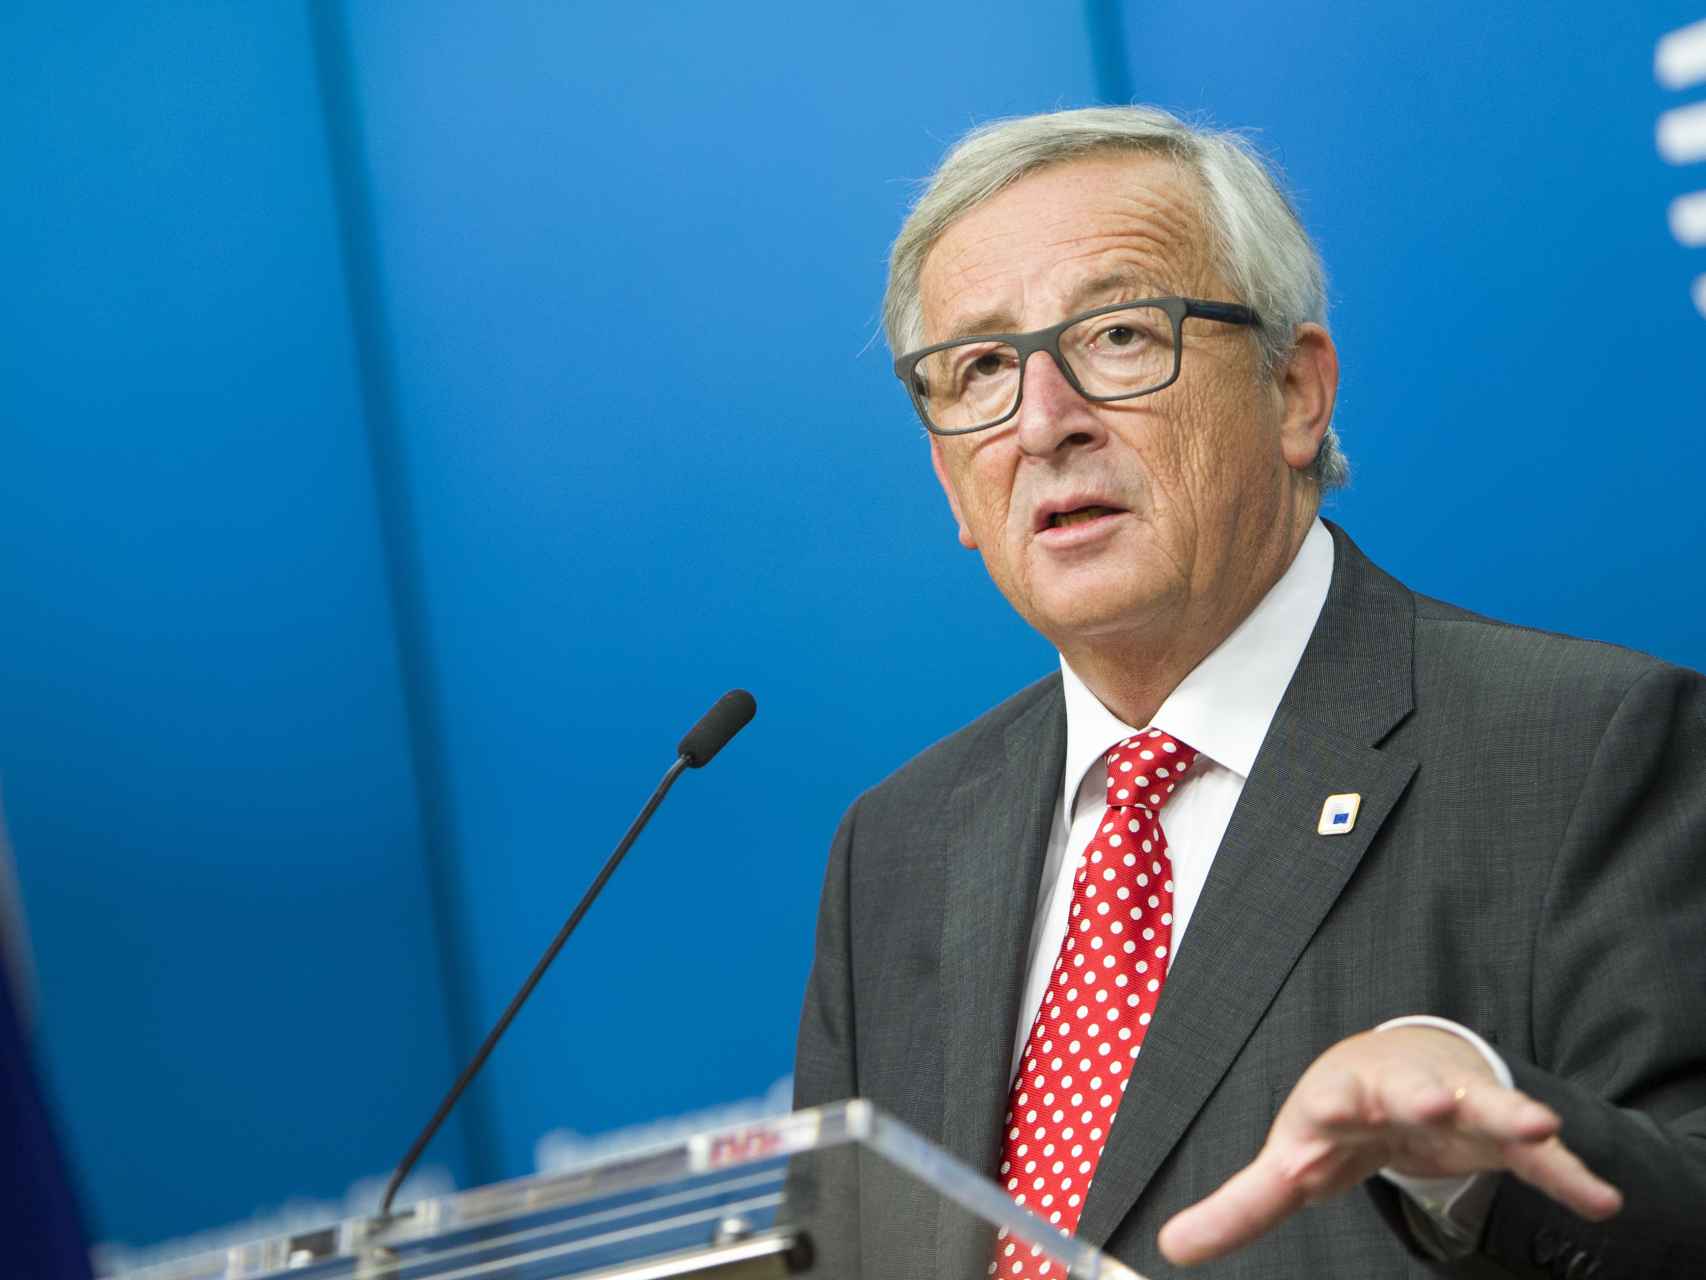 El presidente de la Comisión, Jean-Claude Juncker, durante la última cumbre de la UE